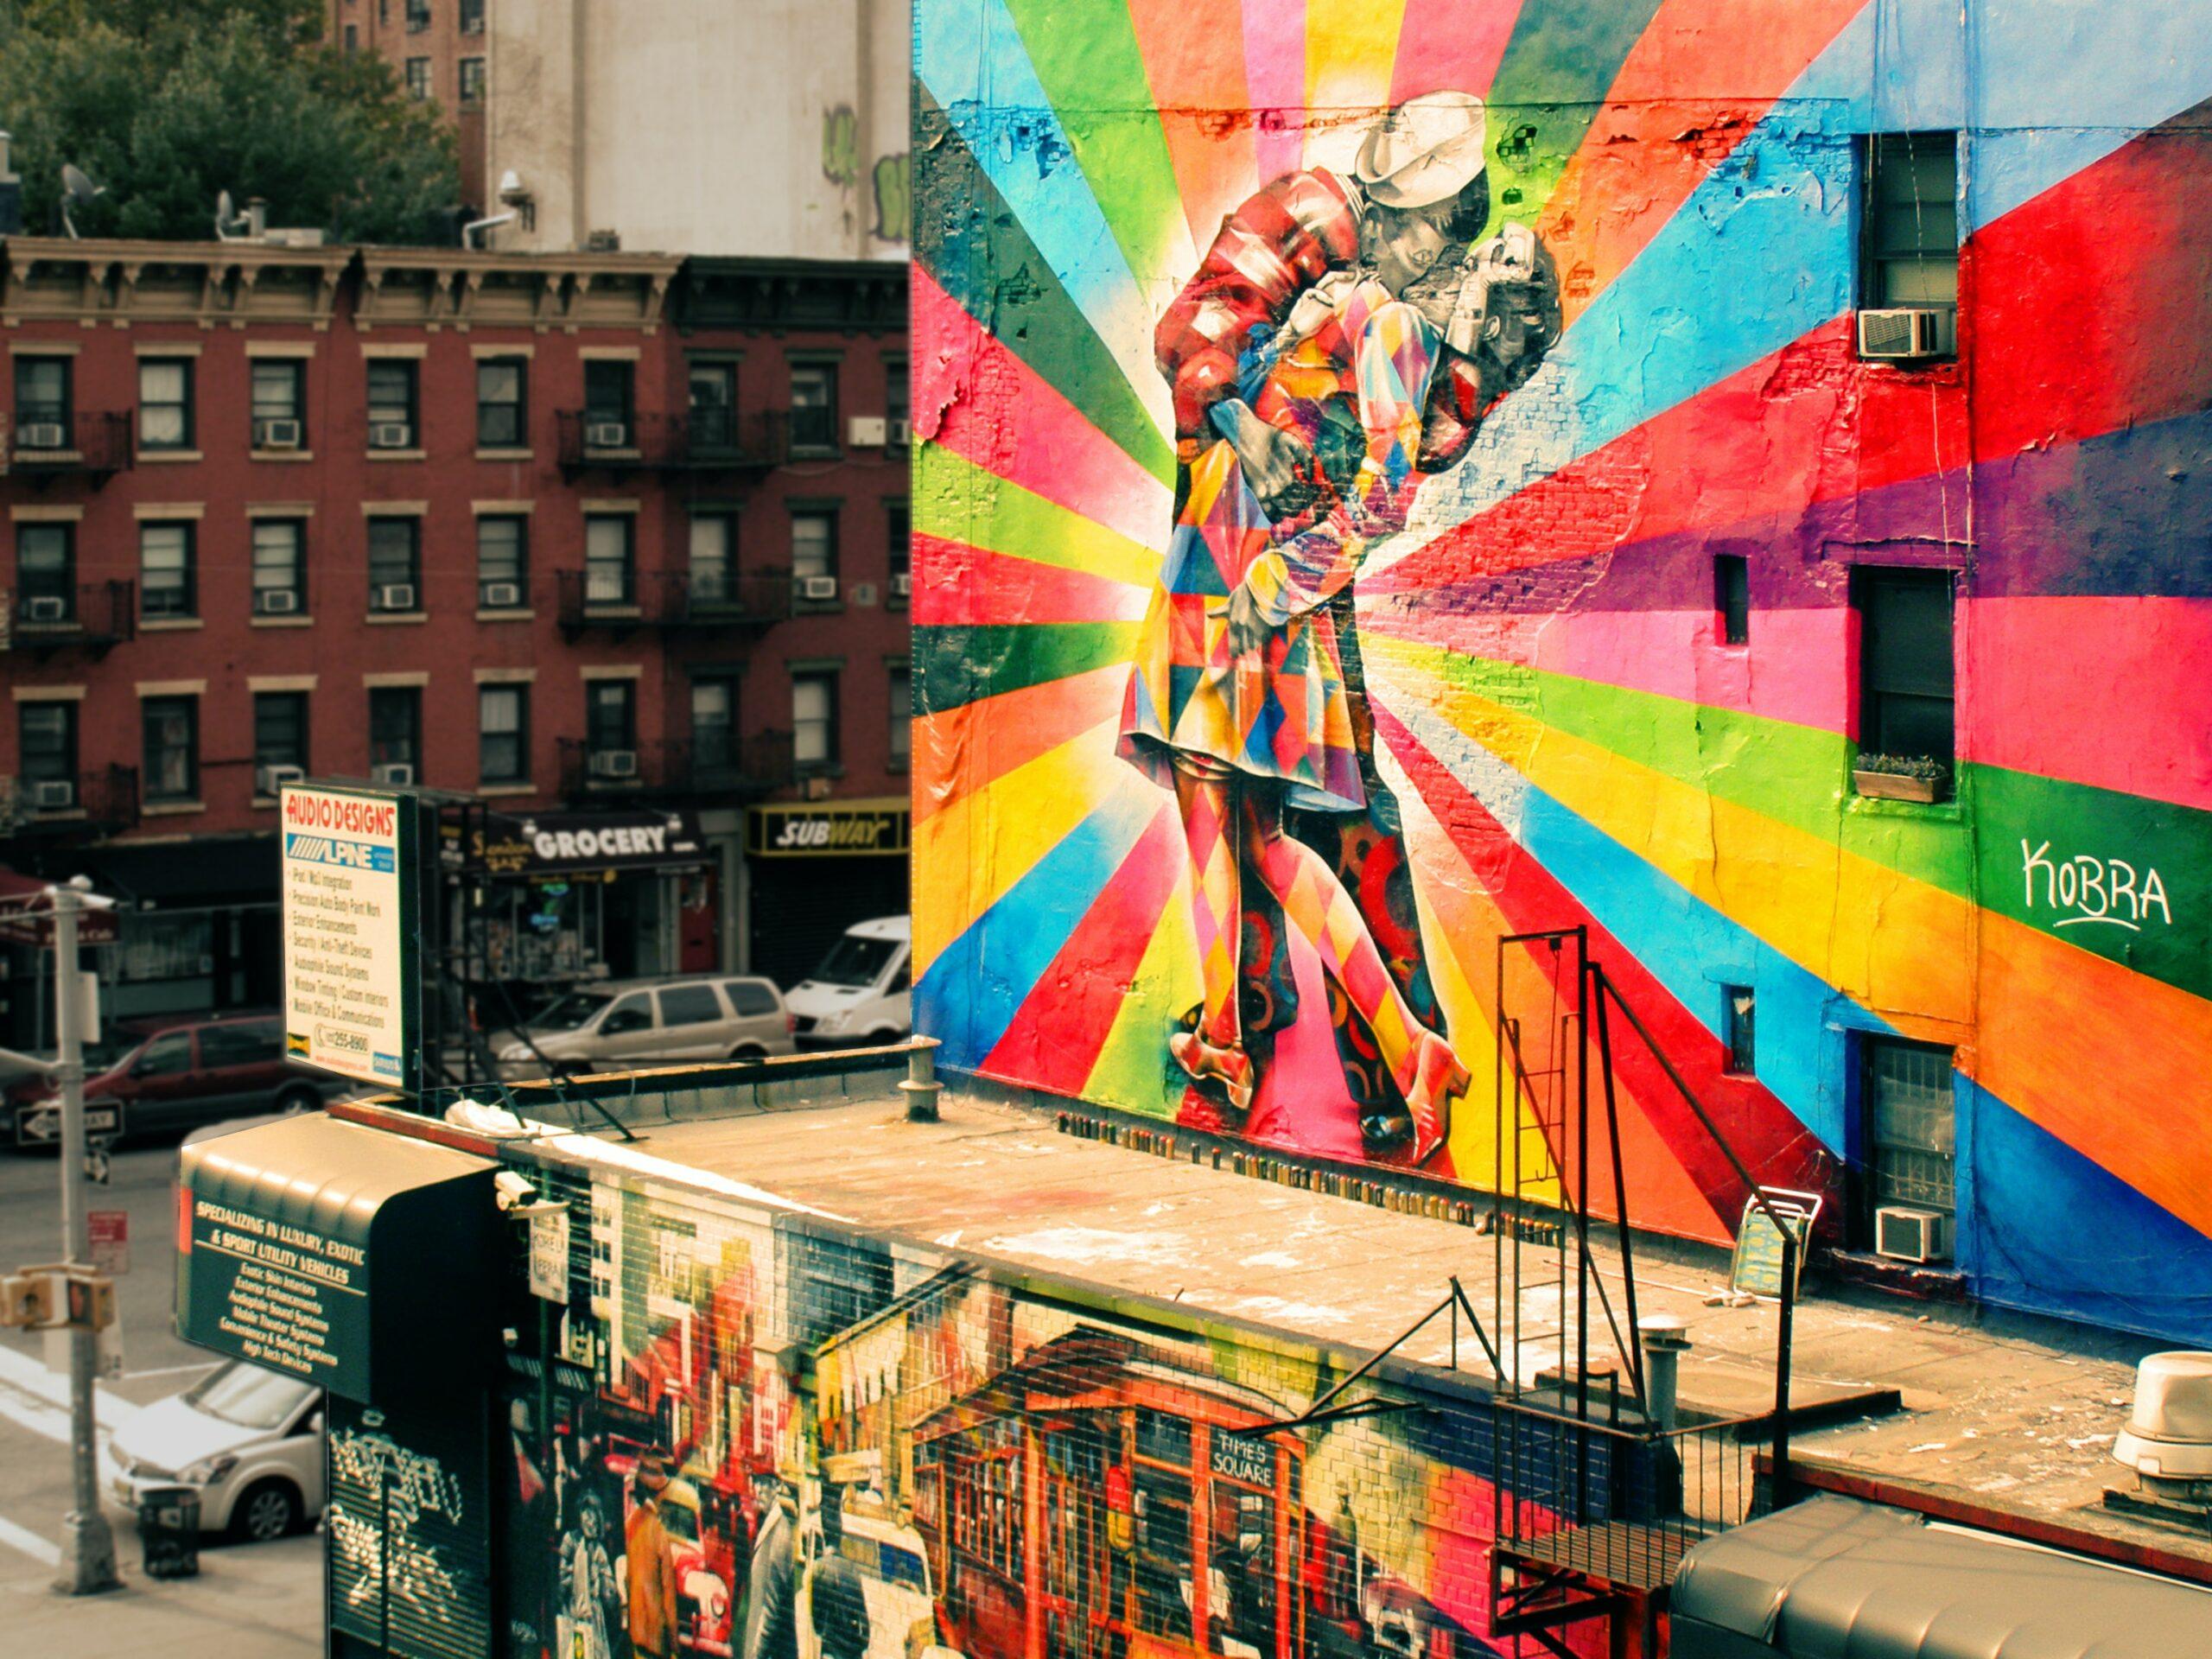 Lire la suite à propos de l’article PW – La valorisation touristique du Street art